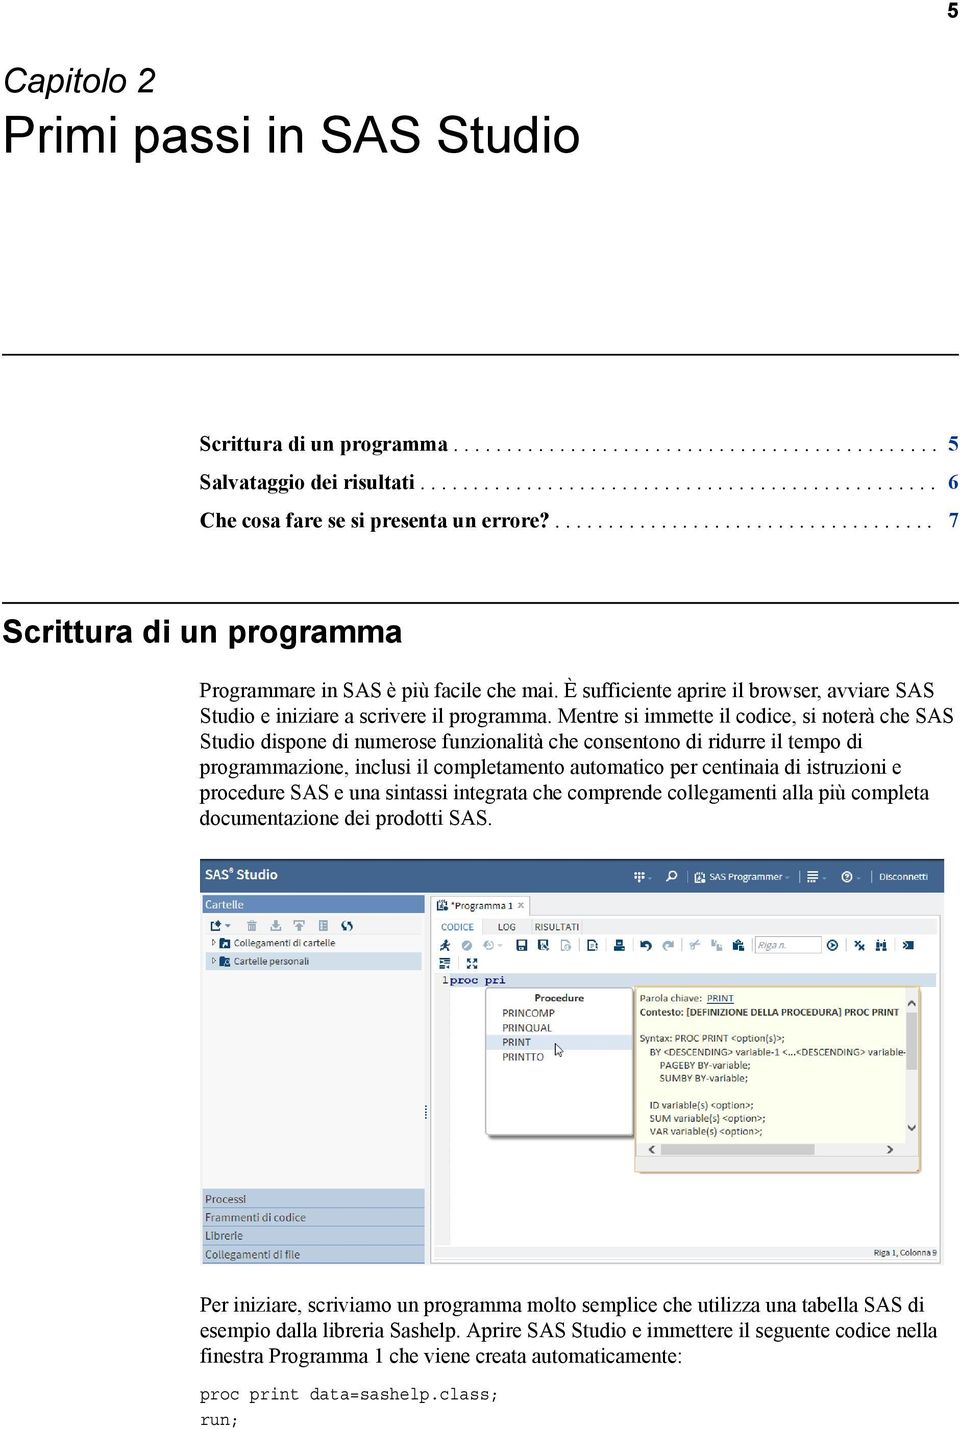 Mentre si immette il codice, si noterà che SAS Studio dispone di numerose funzionalità che consentono di ridurre il tempo di programmazione, inclusi il completamento automatico per centinaia di